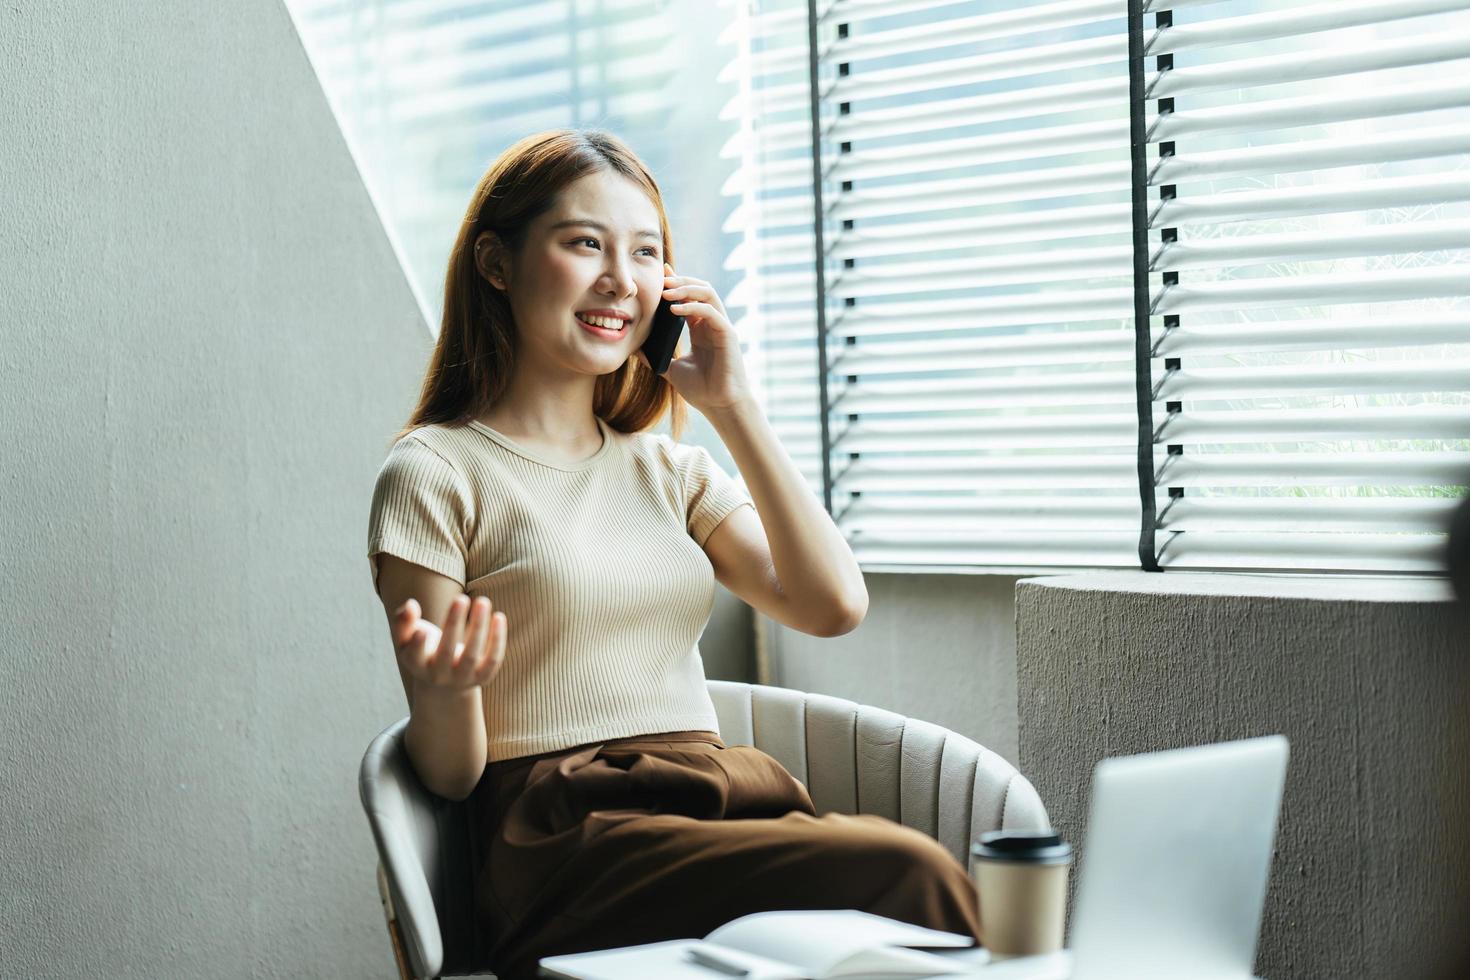 asiatisk kvinna i vardagskläder är glad och glad medan hon kommunicerar med sin smartphone och arbetar på ett kafé. foto